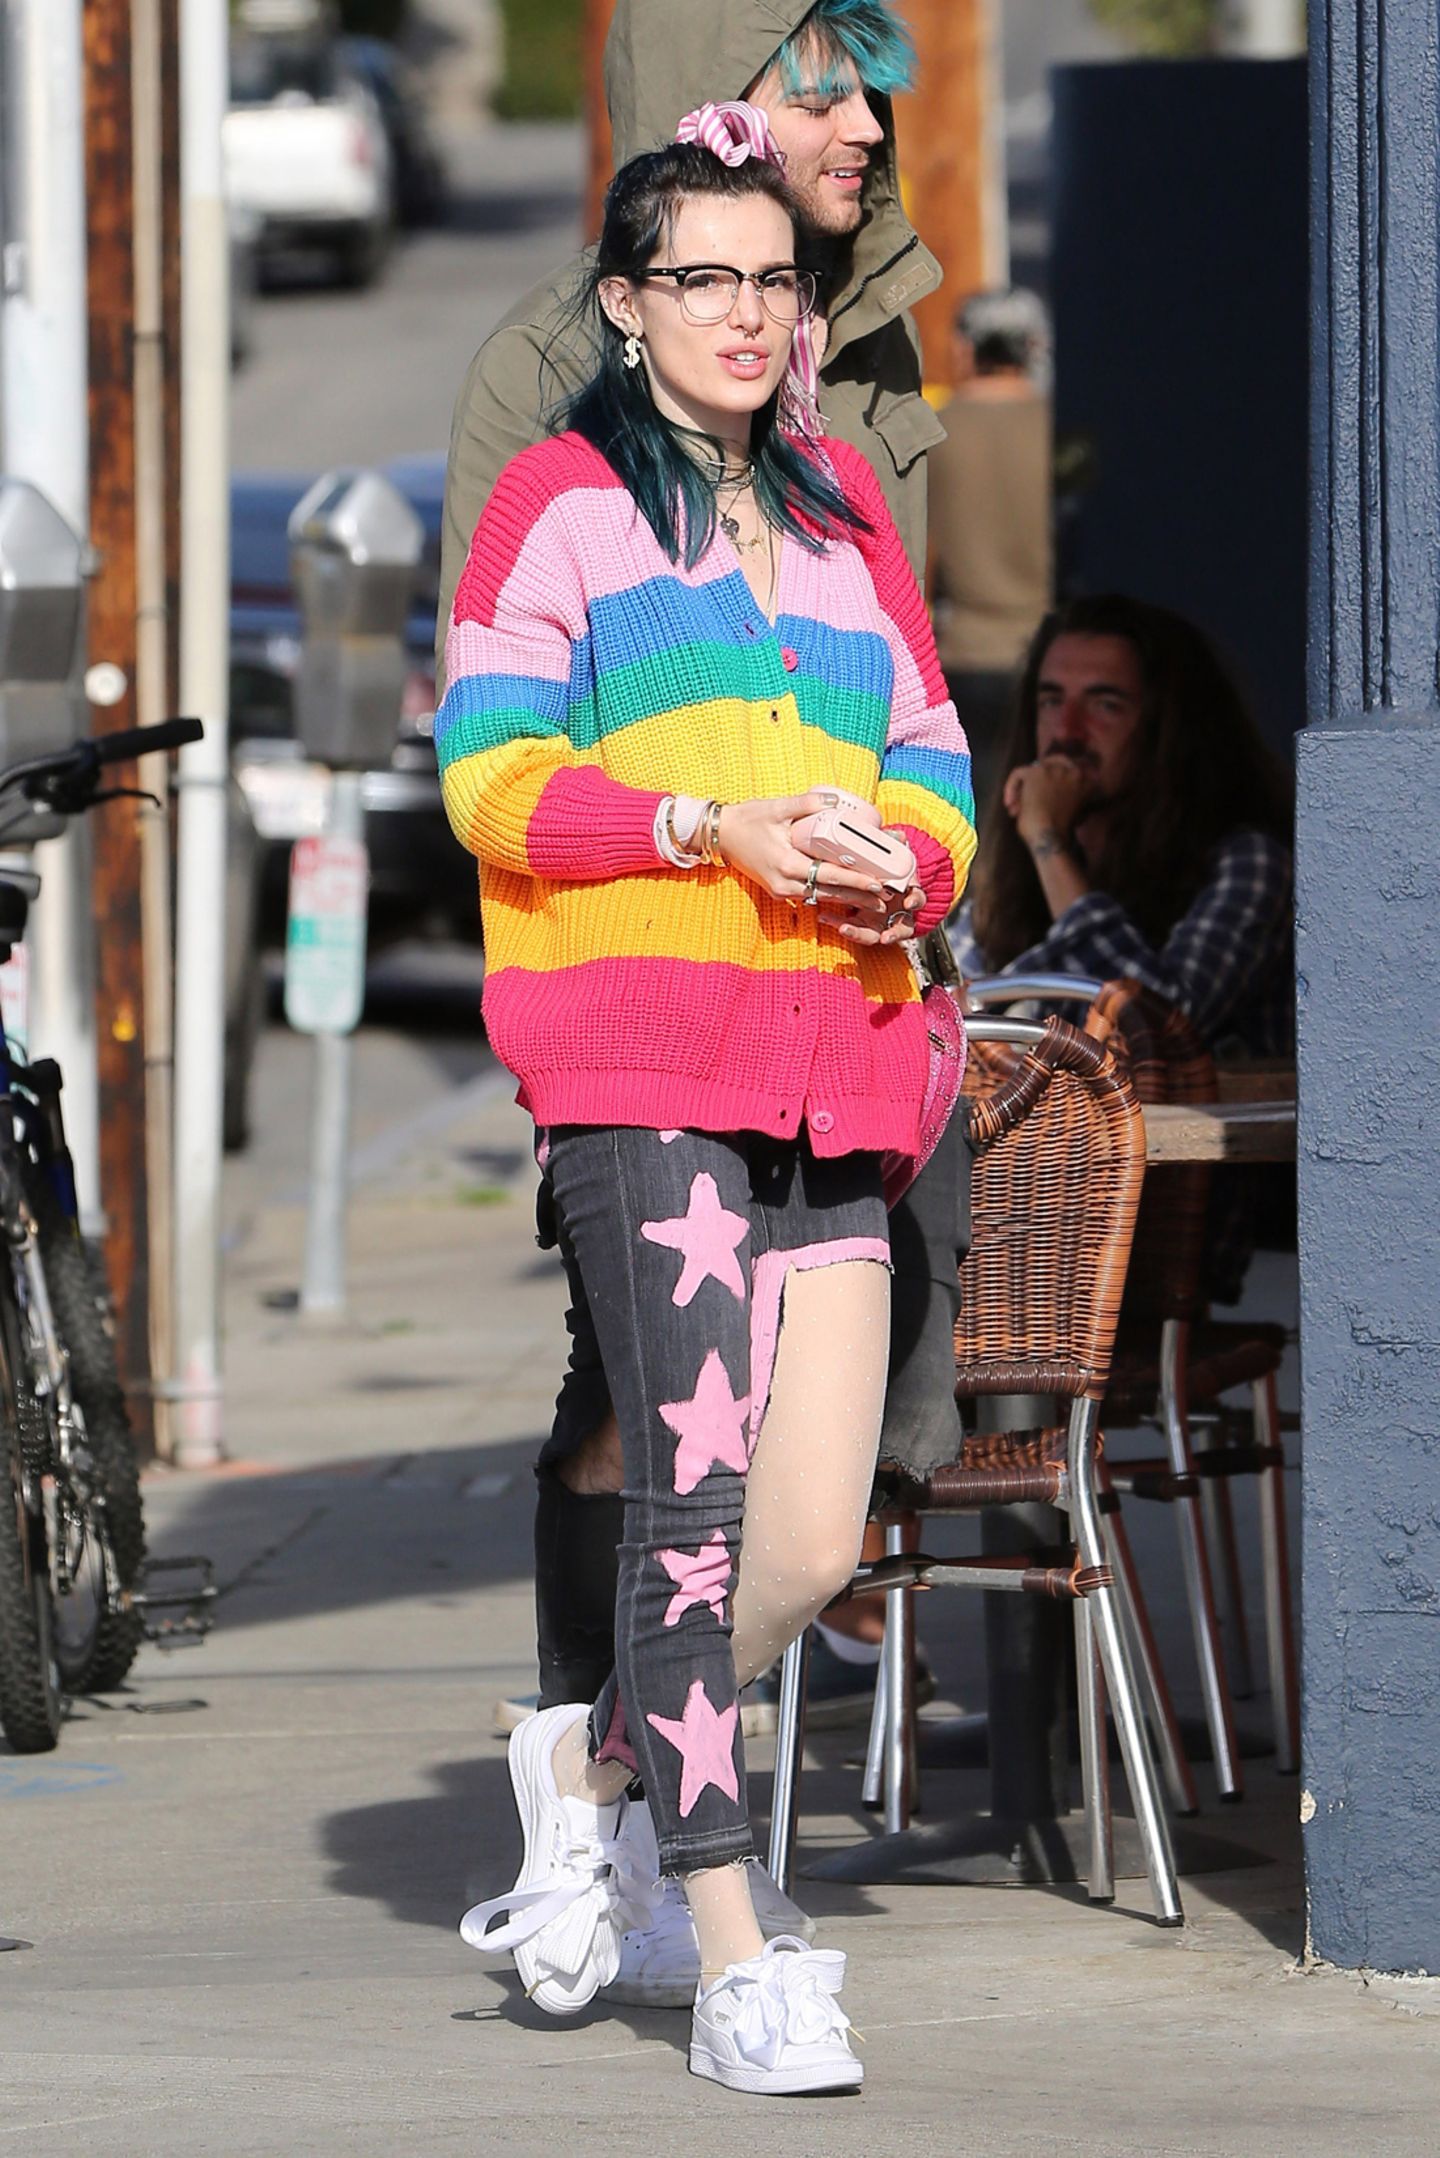 Schauspielerin Bella Thorne treibt es bunt. Bei einem Spaziergang  trägt sie einen reichlich übertriebenen Regenbogen-Look mit halbseitig abgetrennter Jeans und Fussel-Frisur. Das finden selbst Einhörner nicht schön.